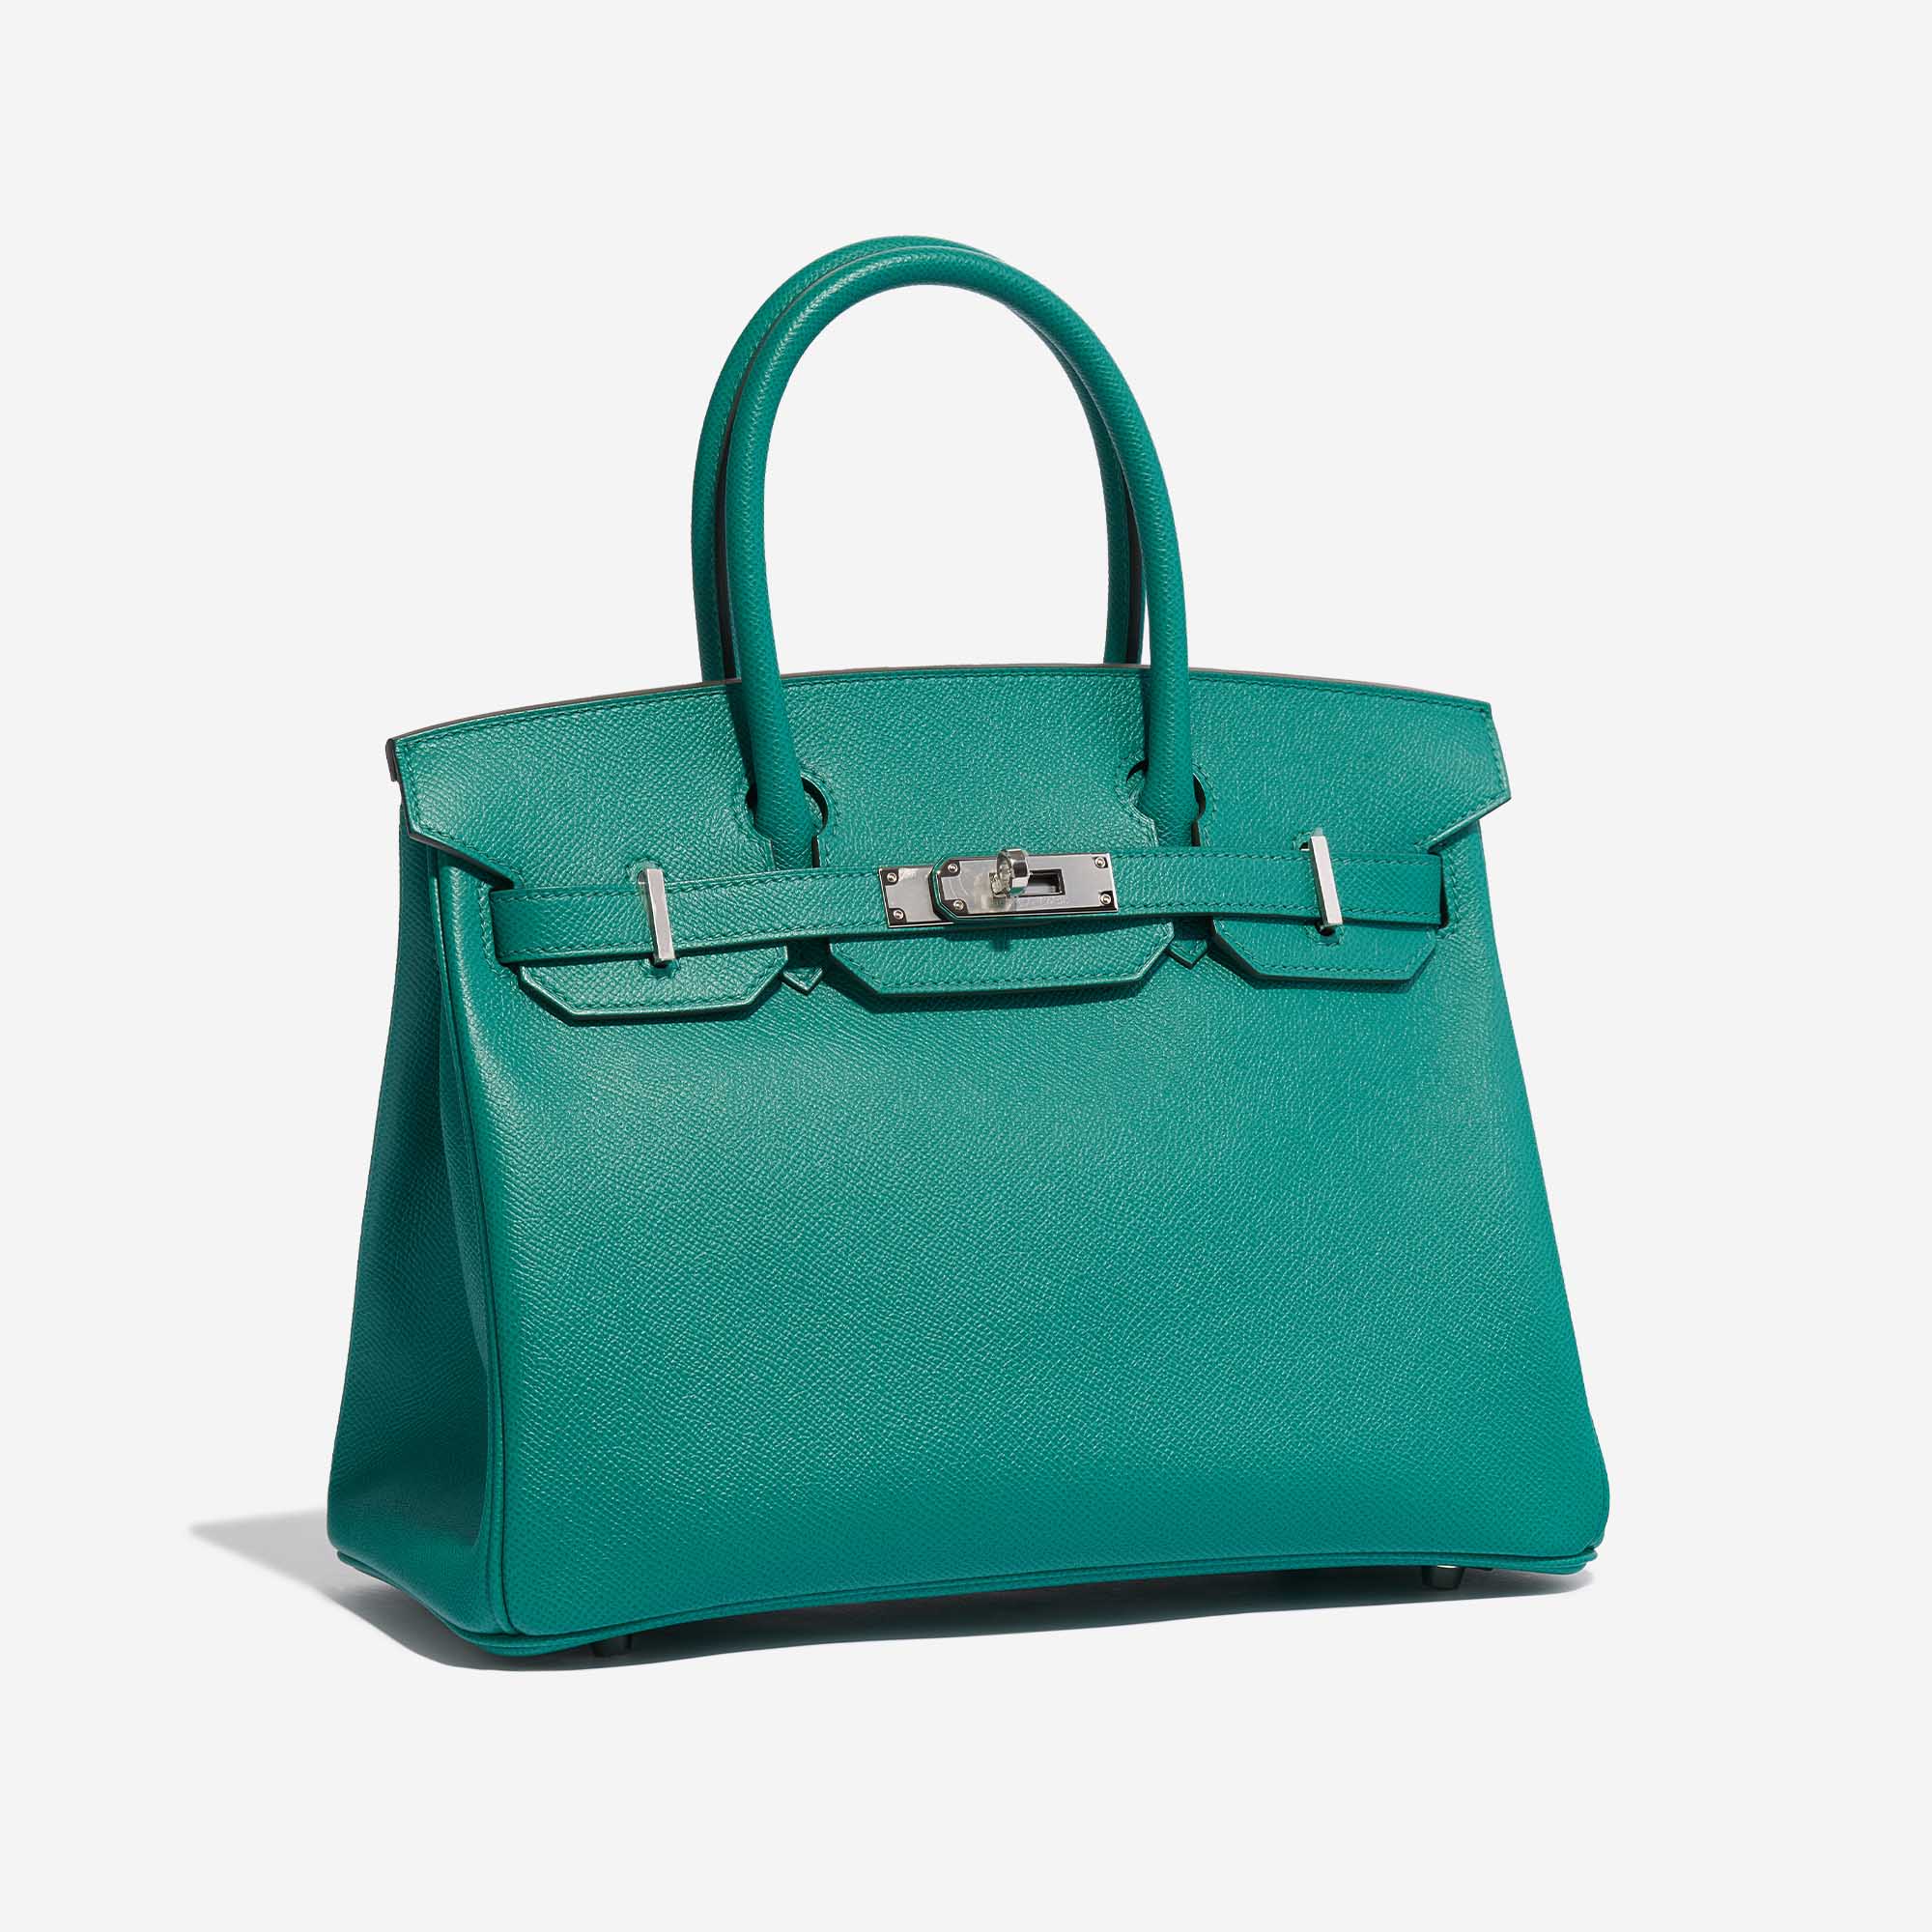 Pre-owned Hermès Tasche Birkin 30 Epsom Vert Jade Green Side Front | Verkaufen Sie Ihre Designer-Tasche auf Saclab.com